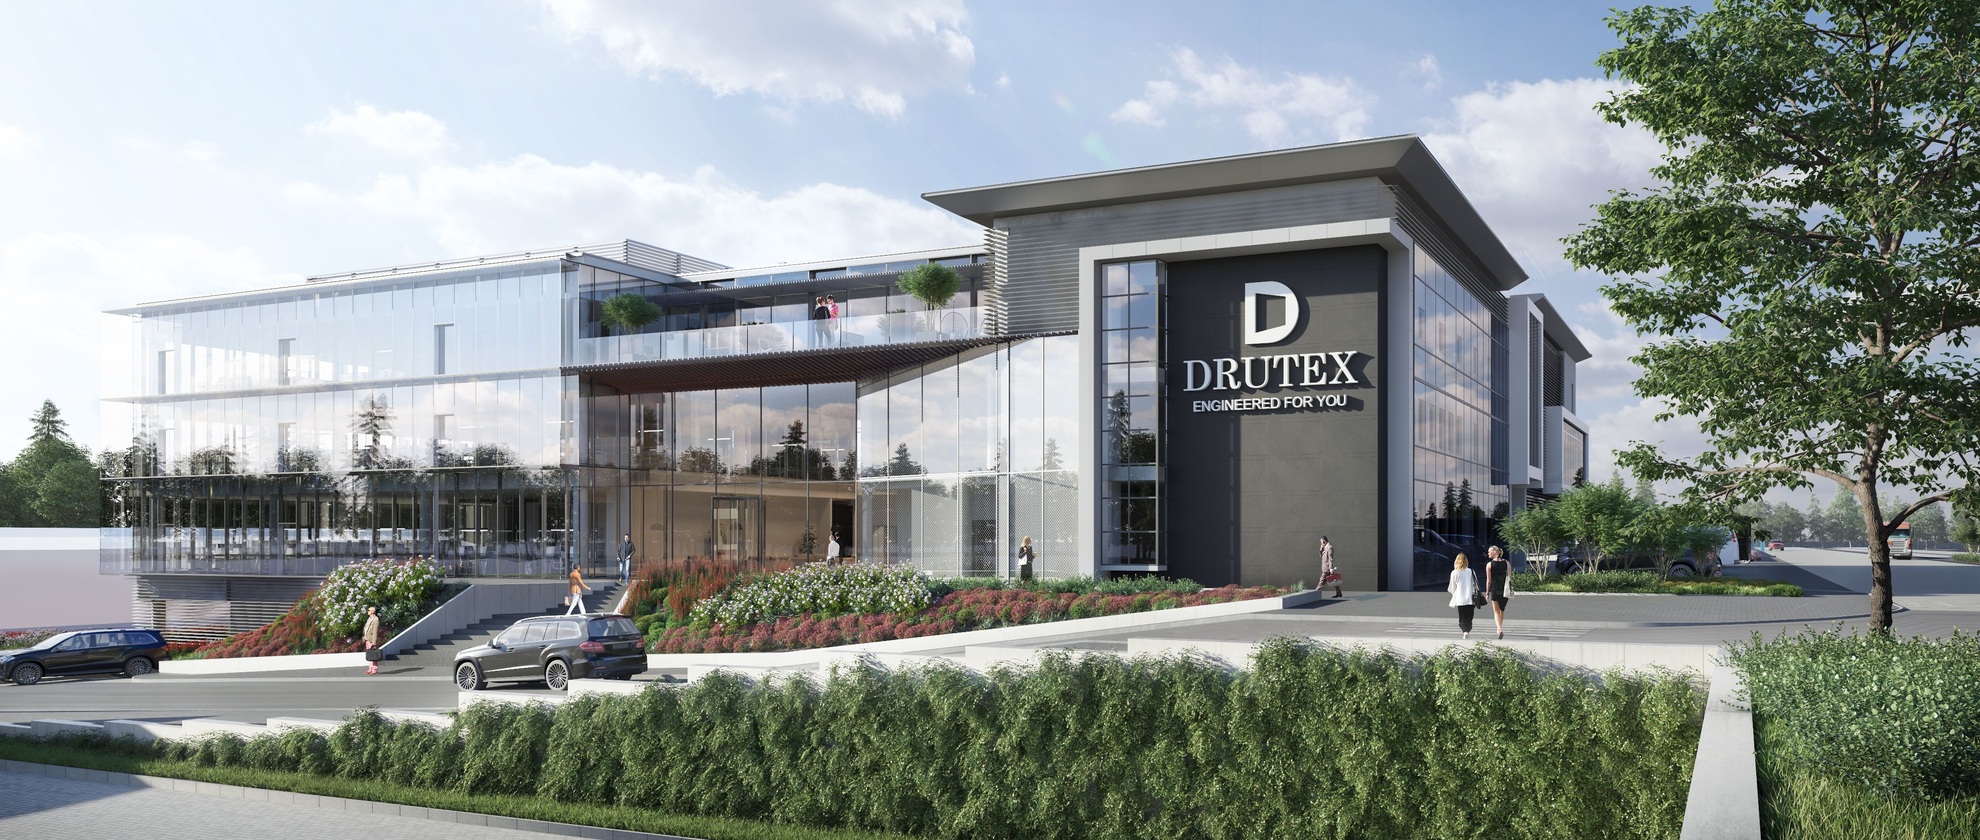 Drutex beginnt mit dem Bau eines der modernsten Bürogebäude in Polen